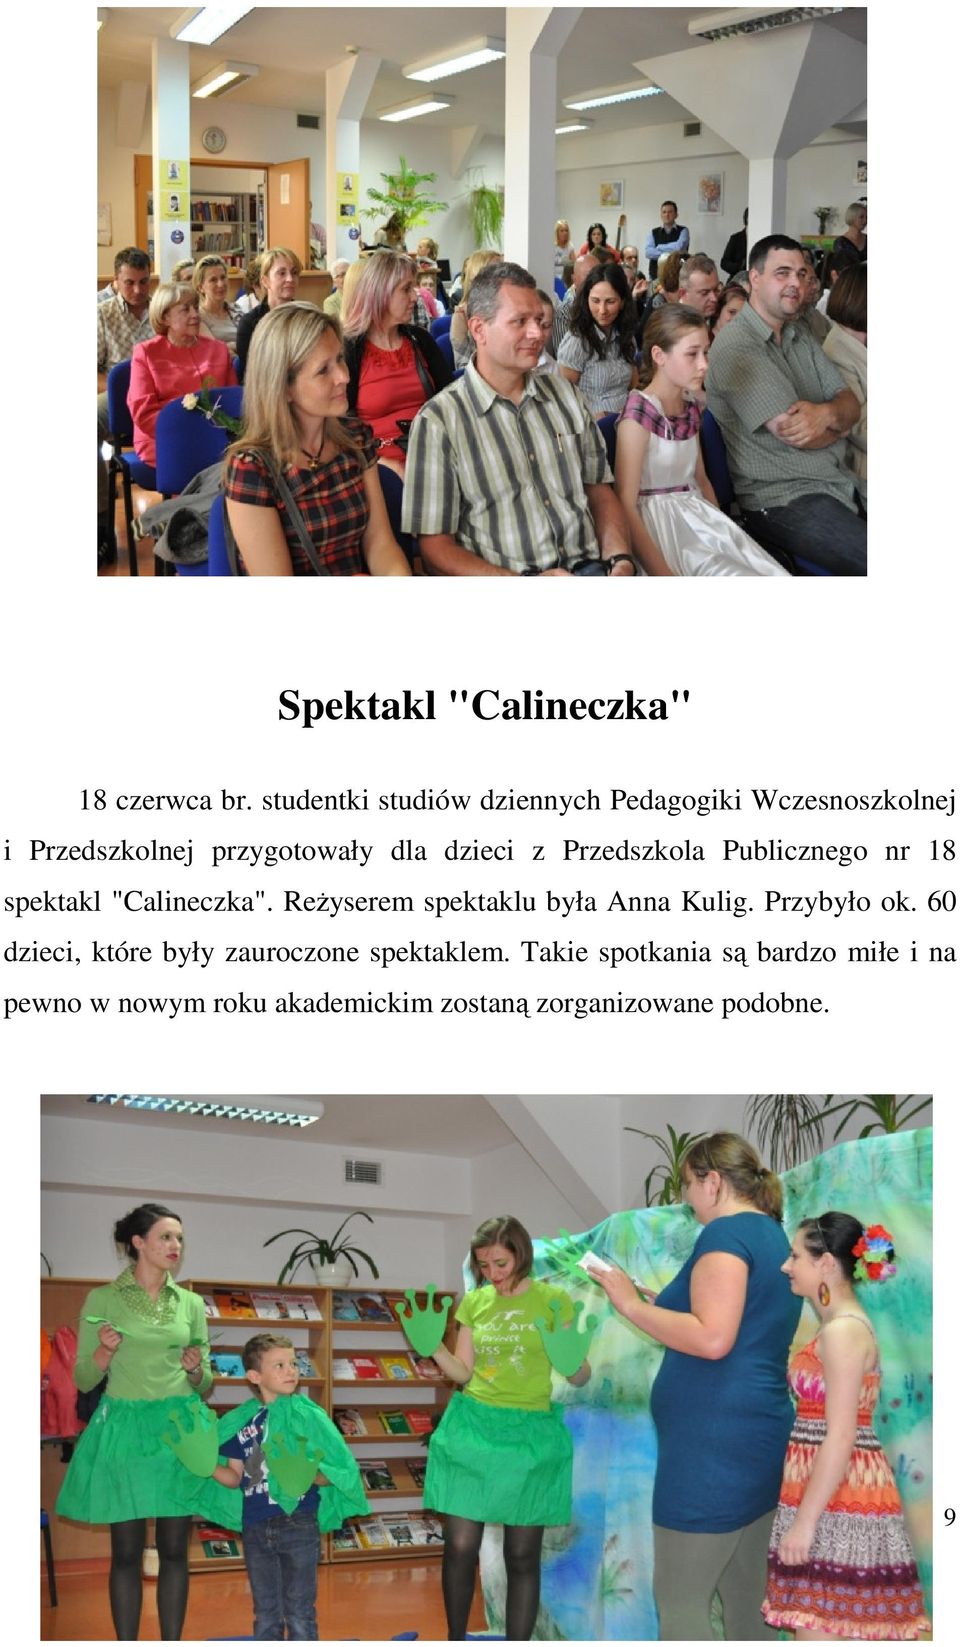 z Przedszkola Publicznego nr 18 spektakl "Calineczka". Reżyserem spektaklu była Anna Kulig.